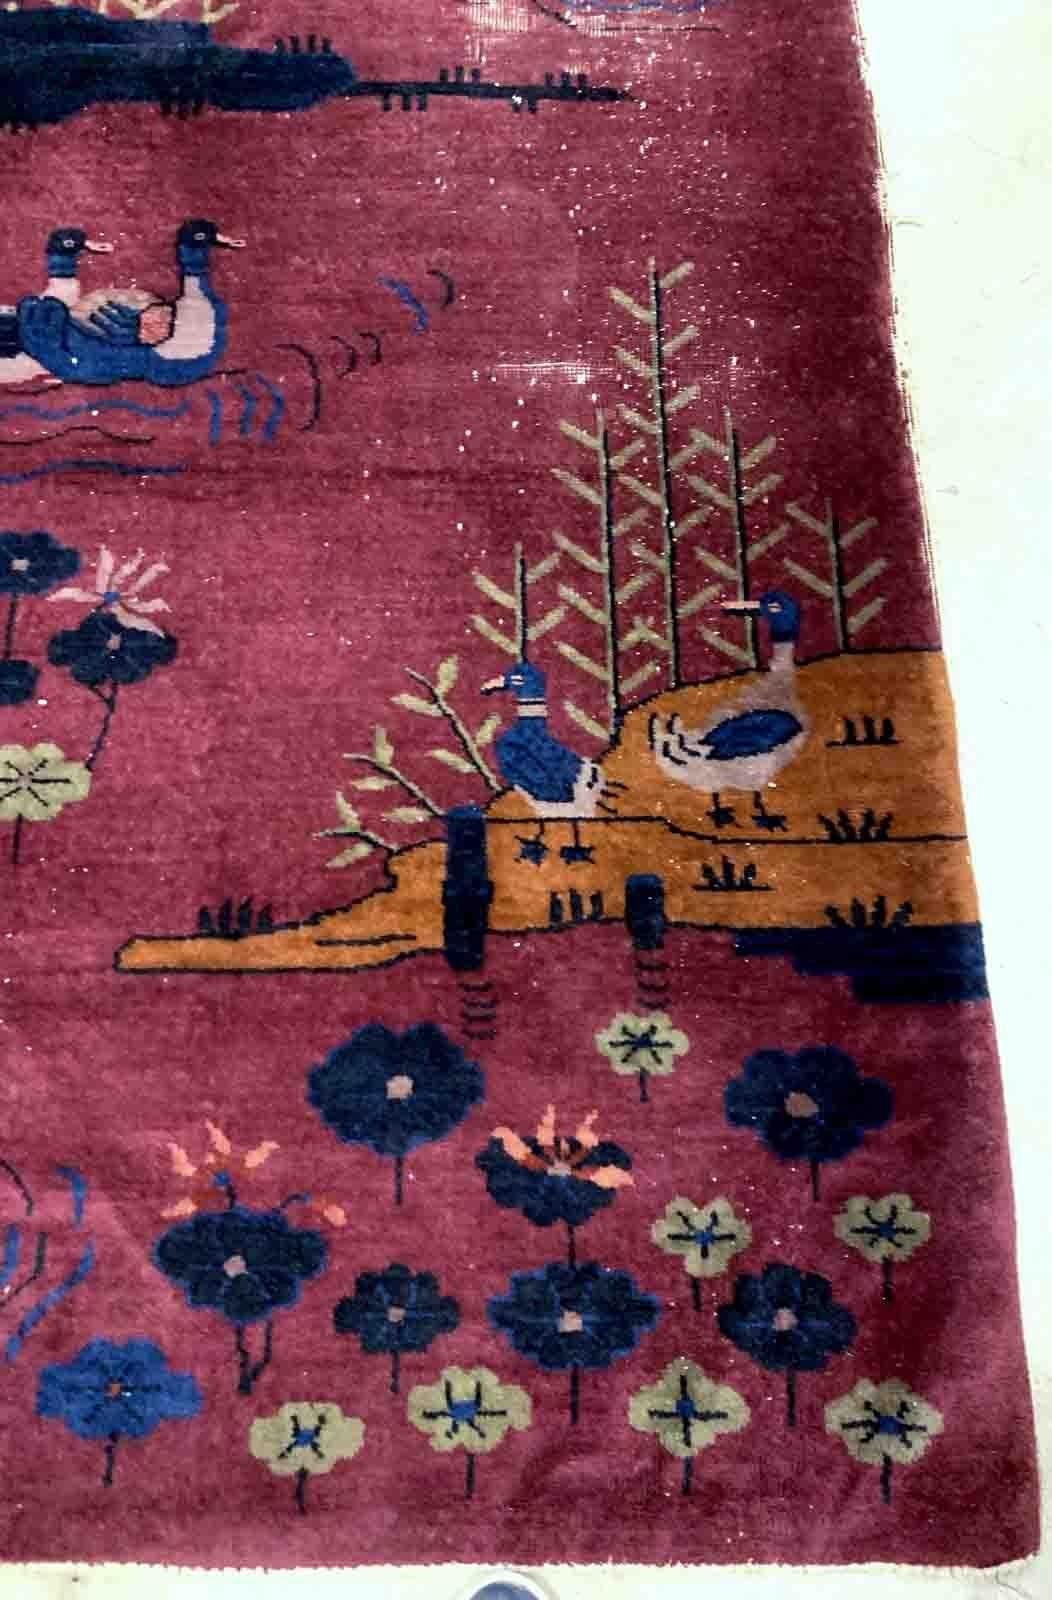 Handgefertigter antiker Art-Deco-Chinesen-Teppich in burgunderfarbener Farbe mit Entenmuster. Der Teppich ist vom Anfang des 20. Jahrhunderts im Originalzustand, er hat etwas niedrigen Flor.

-zustand: original, etwas niedriger Flor,

-um: